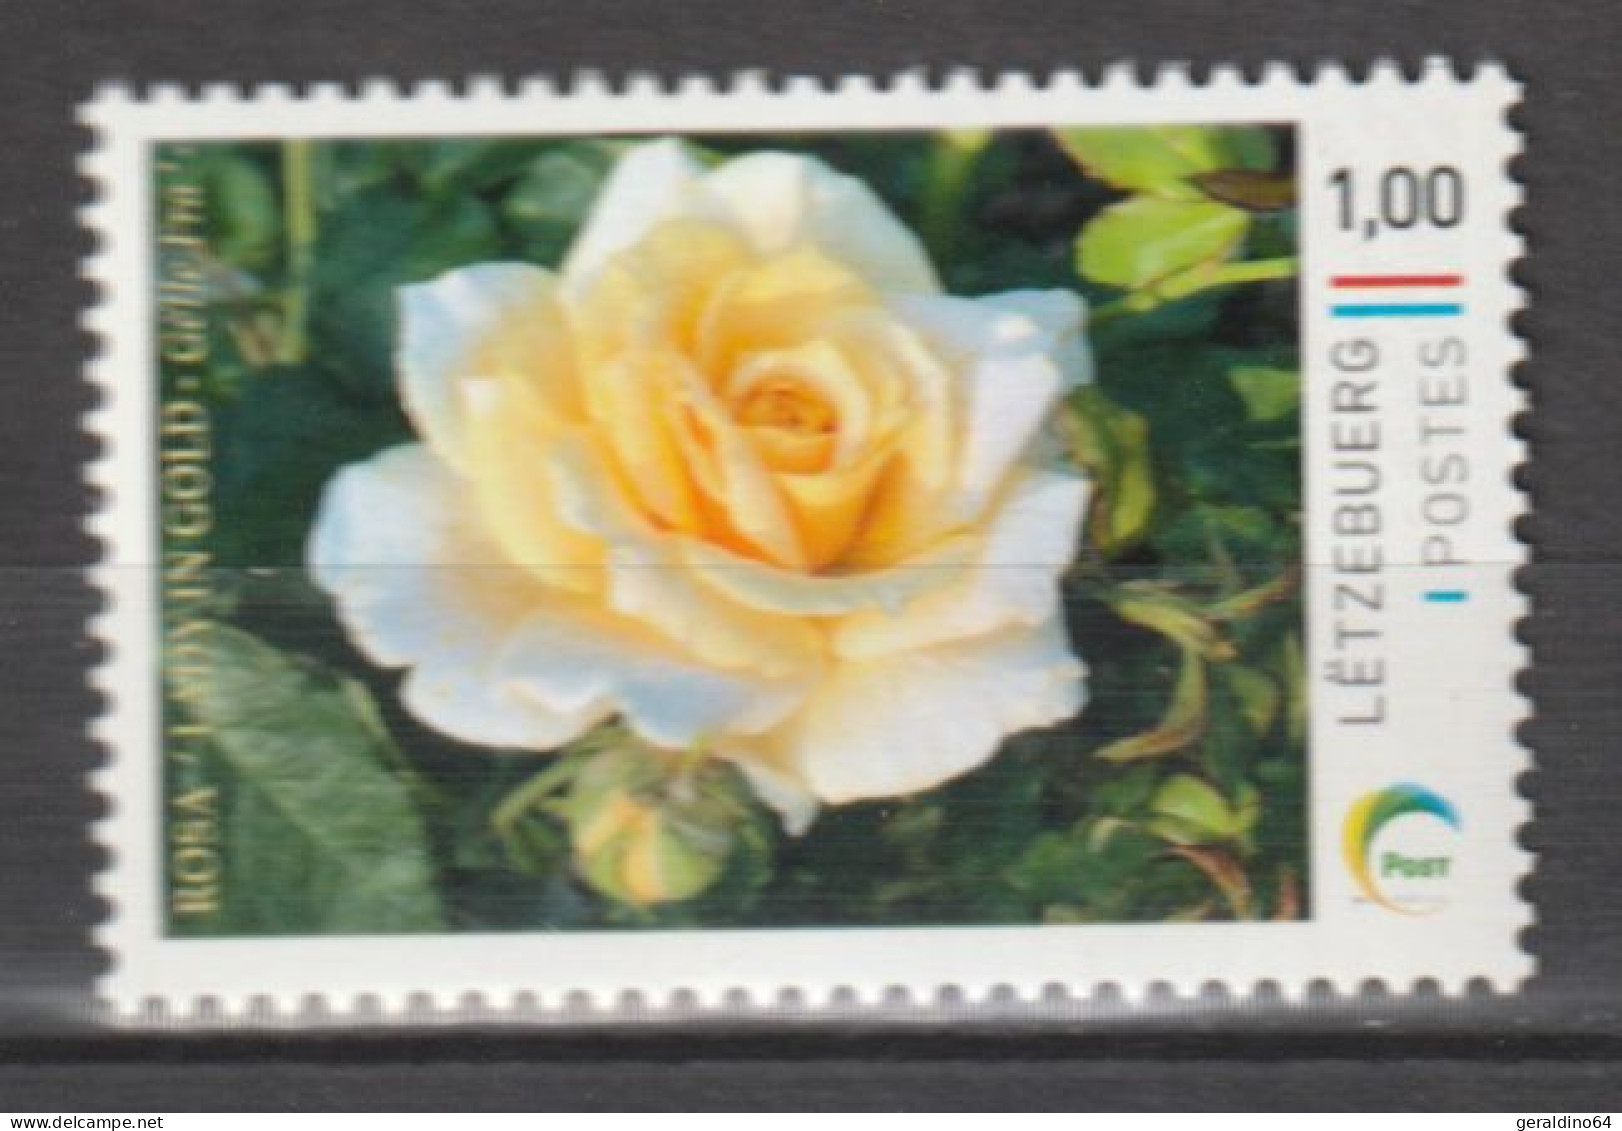 Luxemburg 2023 Personalisierte Briefmarke Rose Lady In Gold ** Postfrisch MNH - Neufs